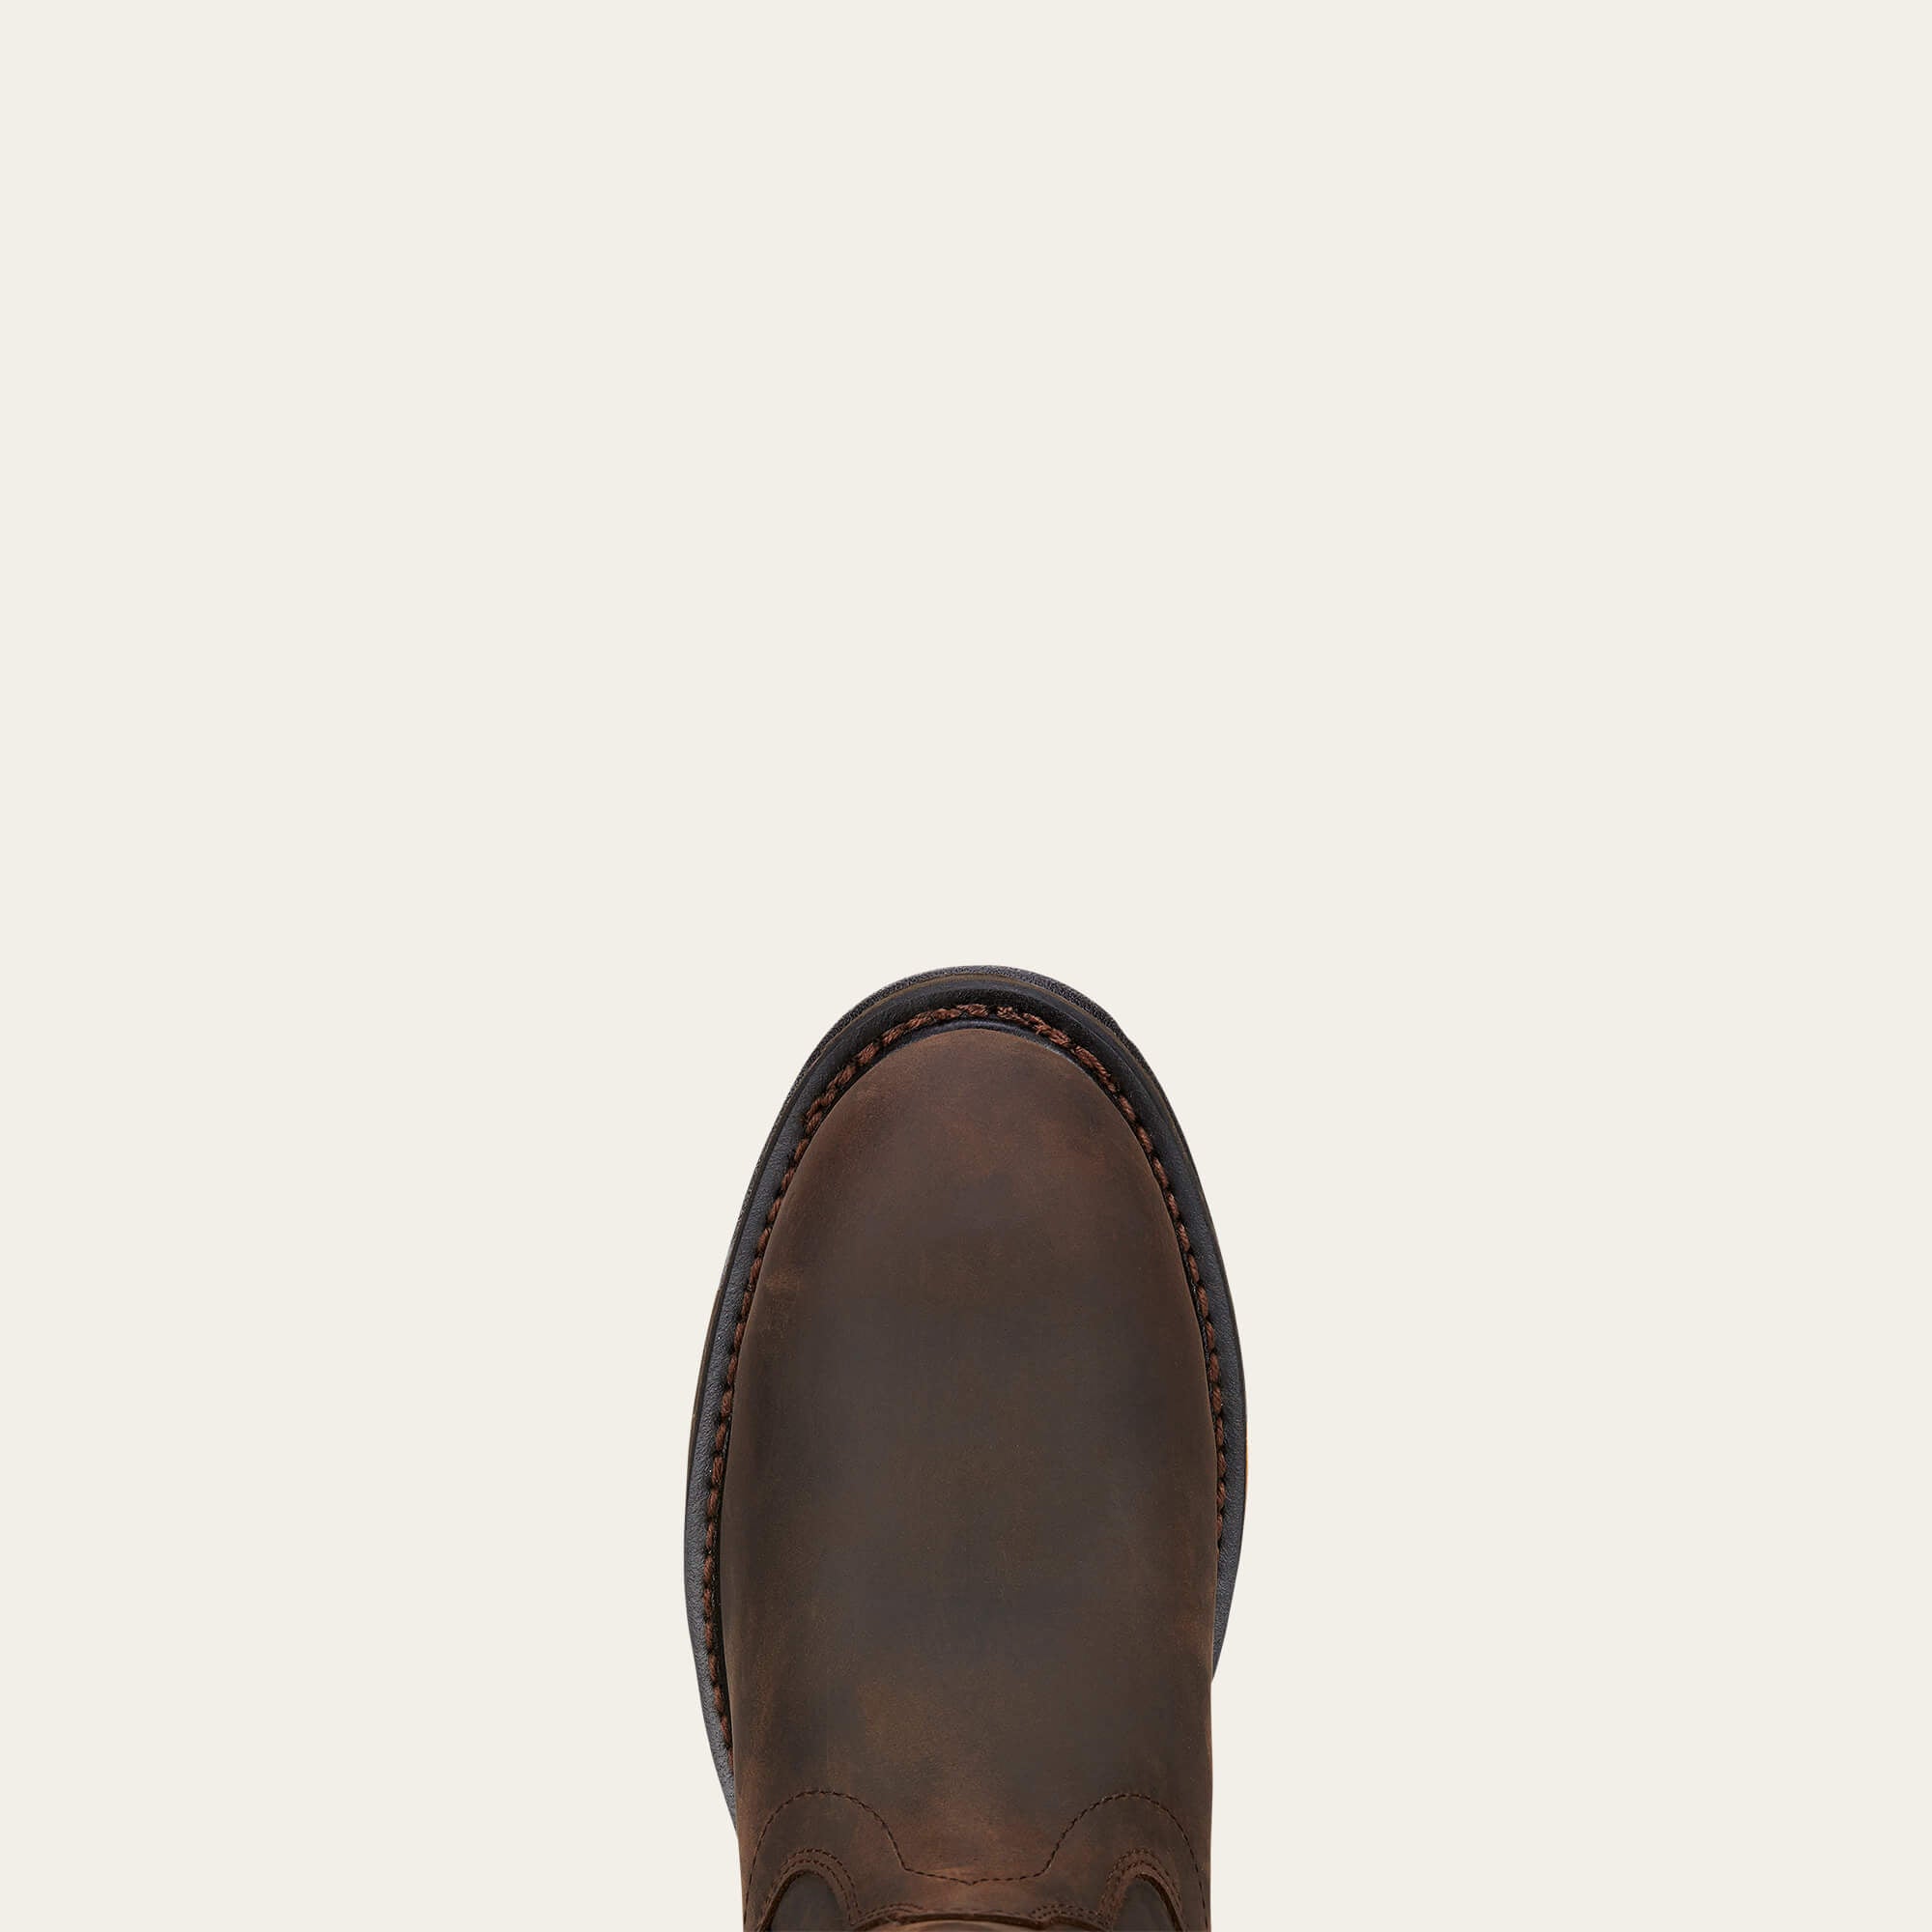 Ariat Men's WorkHog 10" Comp Toe WP Western Work Boot - Oily Brown - 10001200  - Overlook Boots